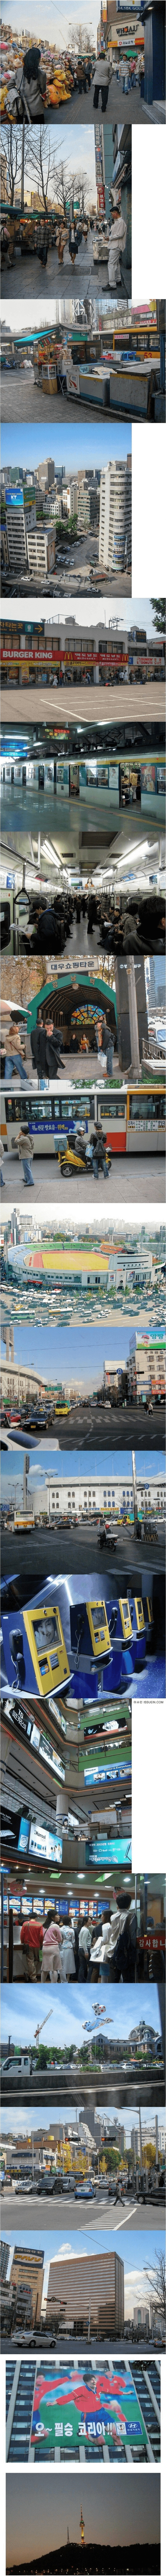 2002년 서울 풍경